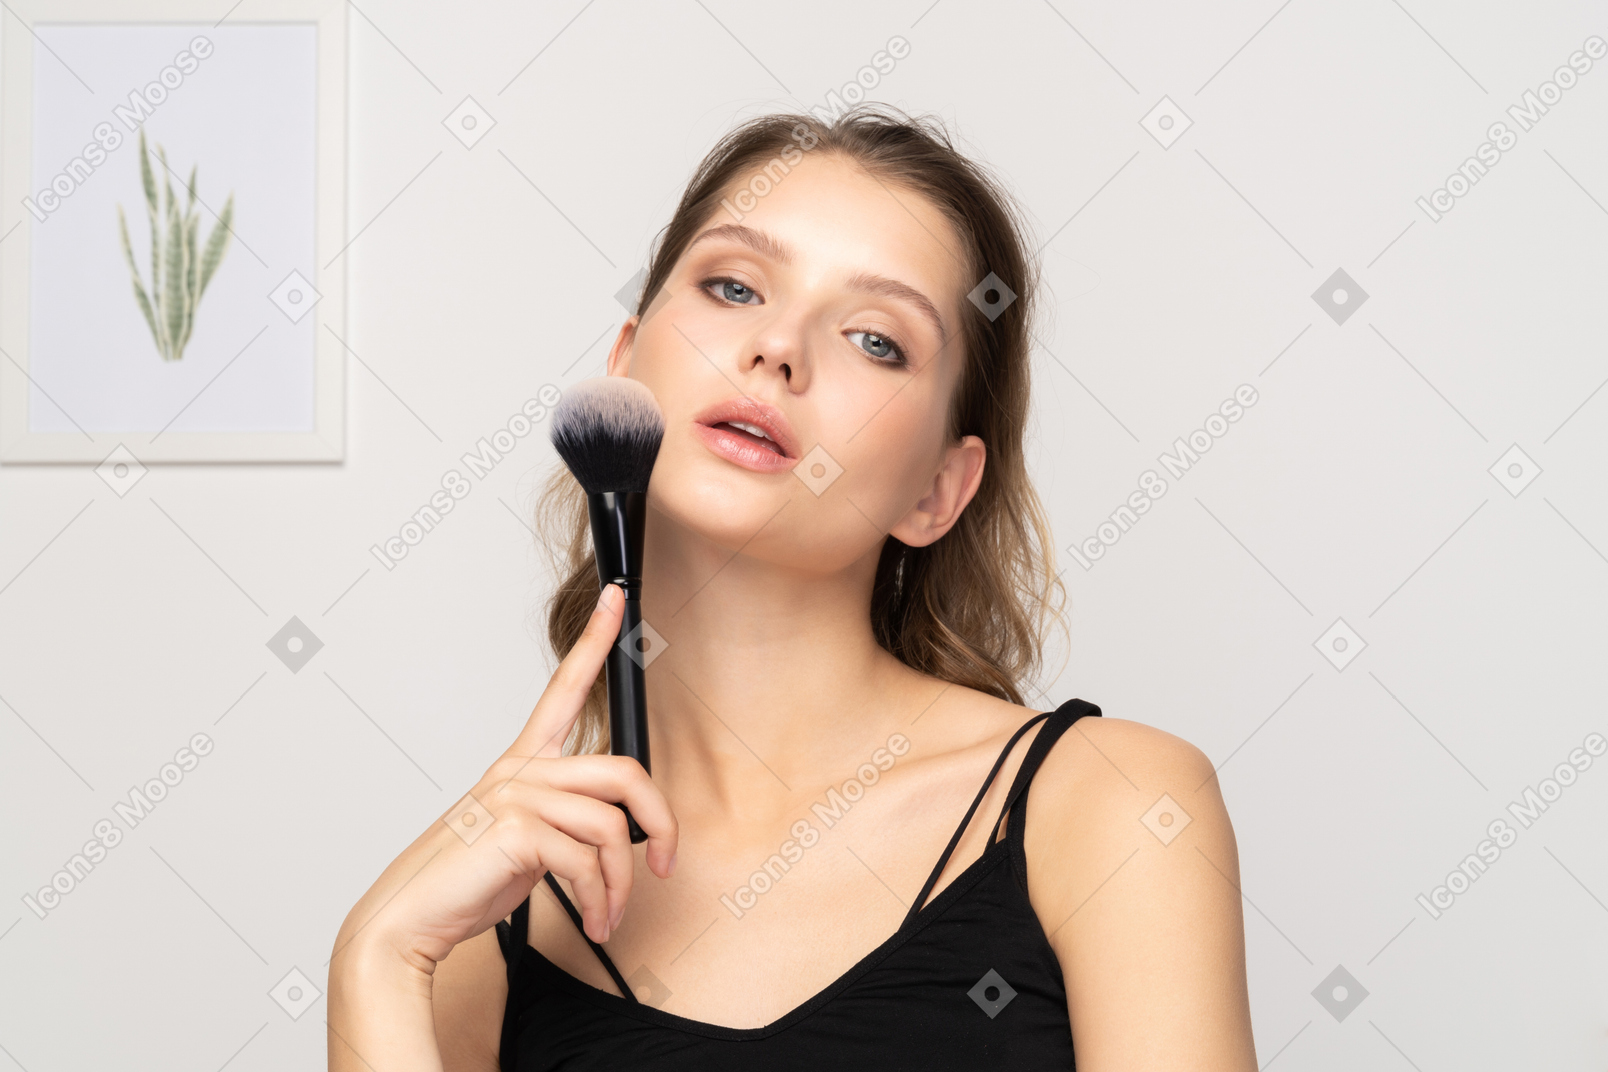 Vista frontal de uma jovem sensual segurando um pincel de maquiagem